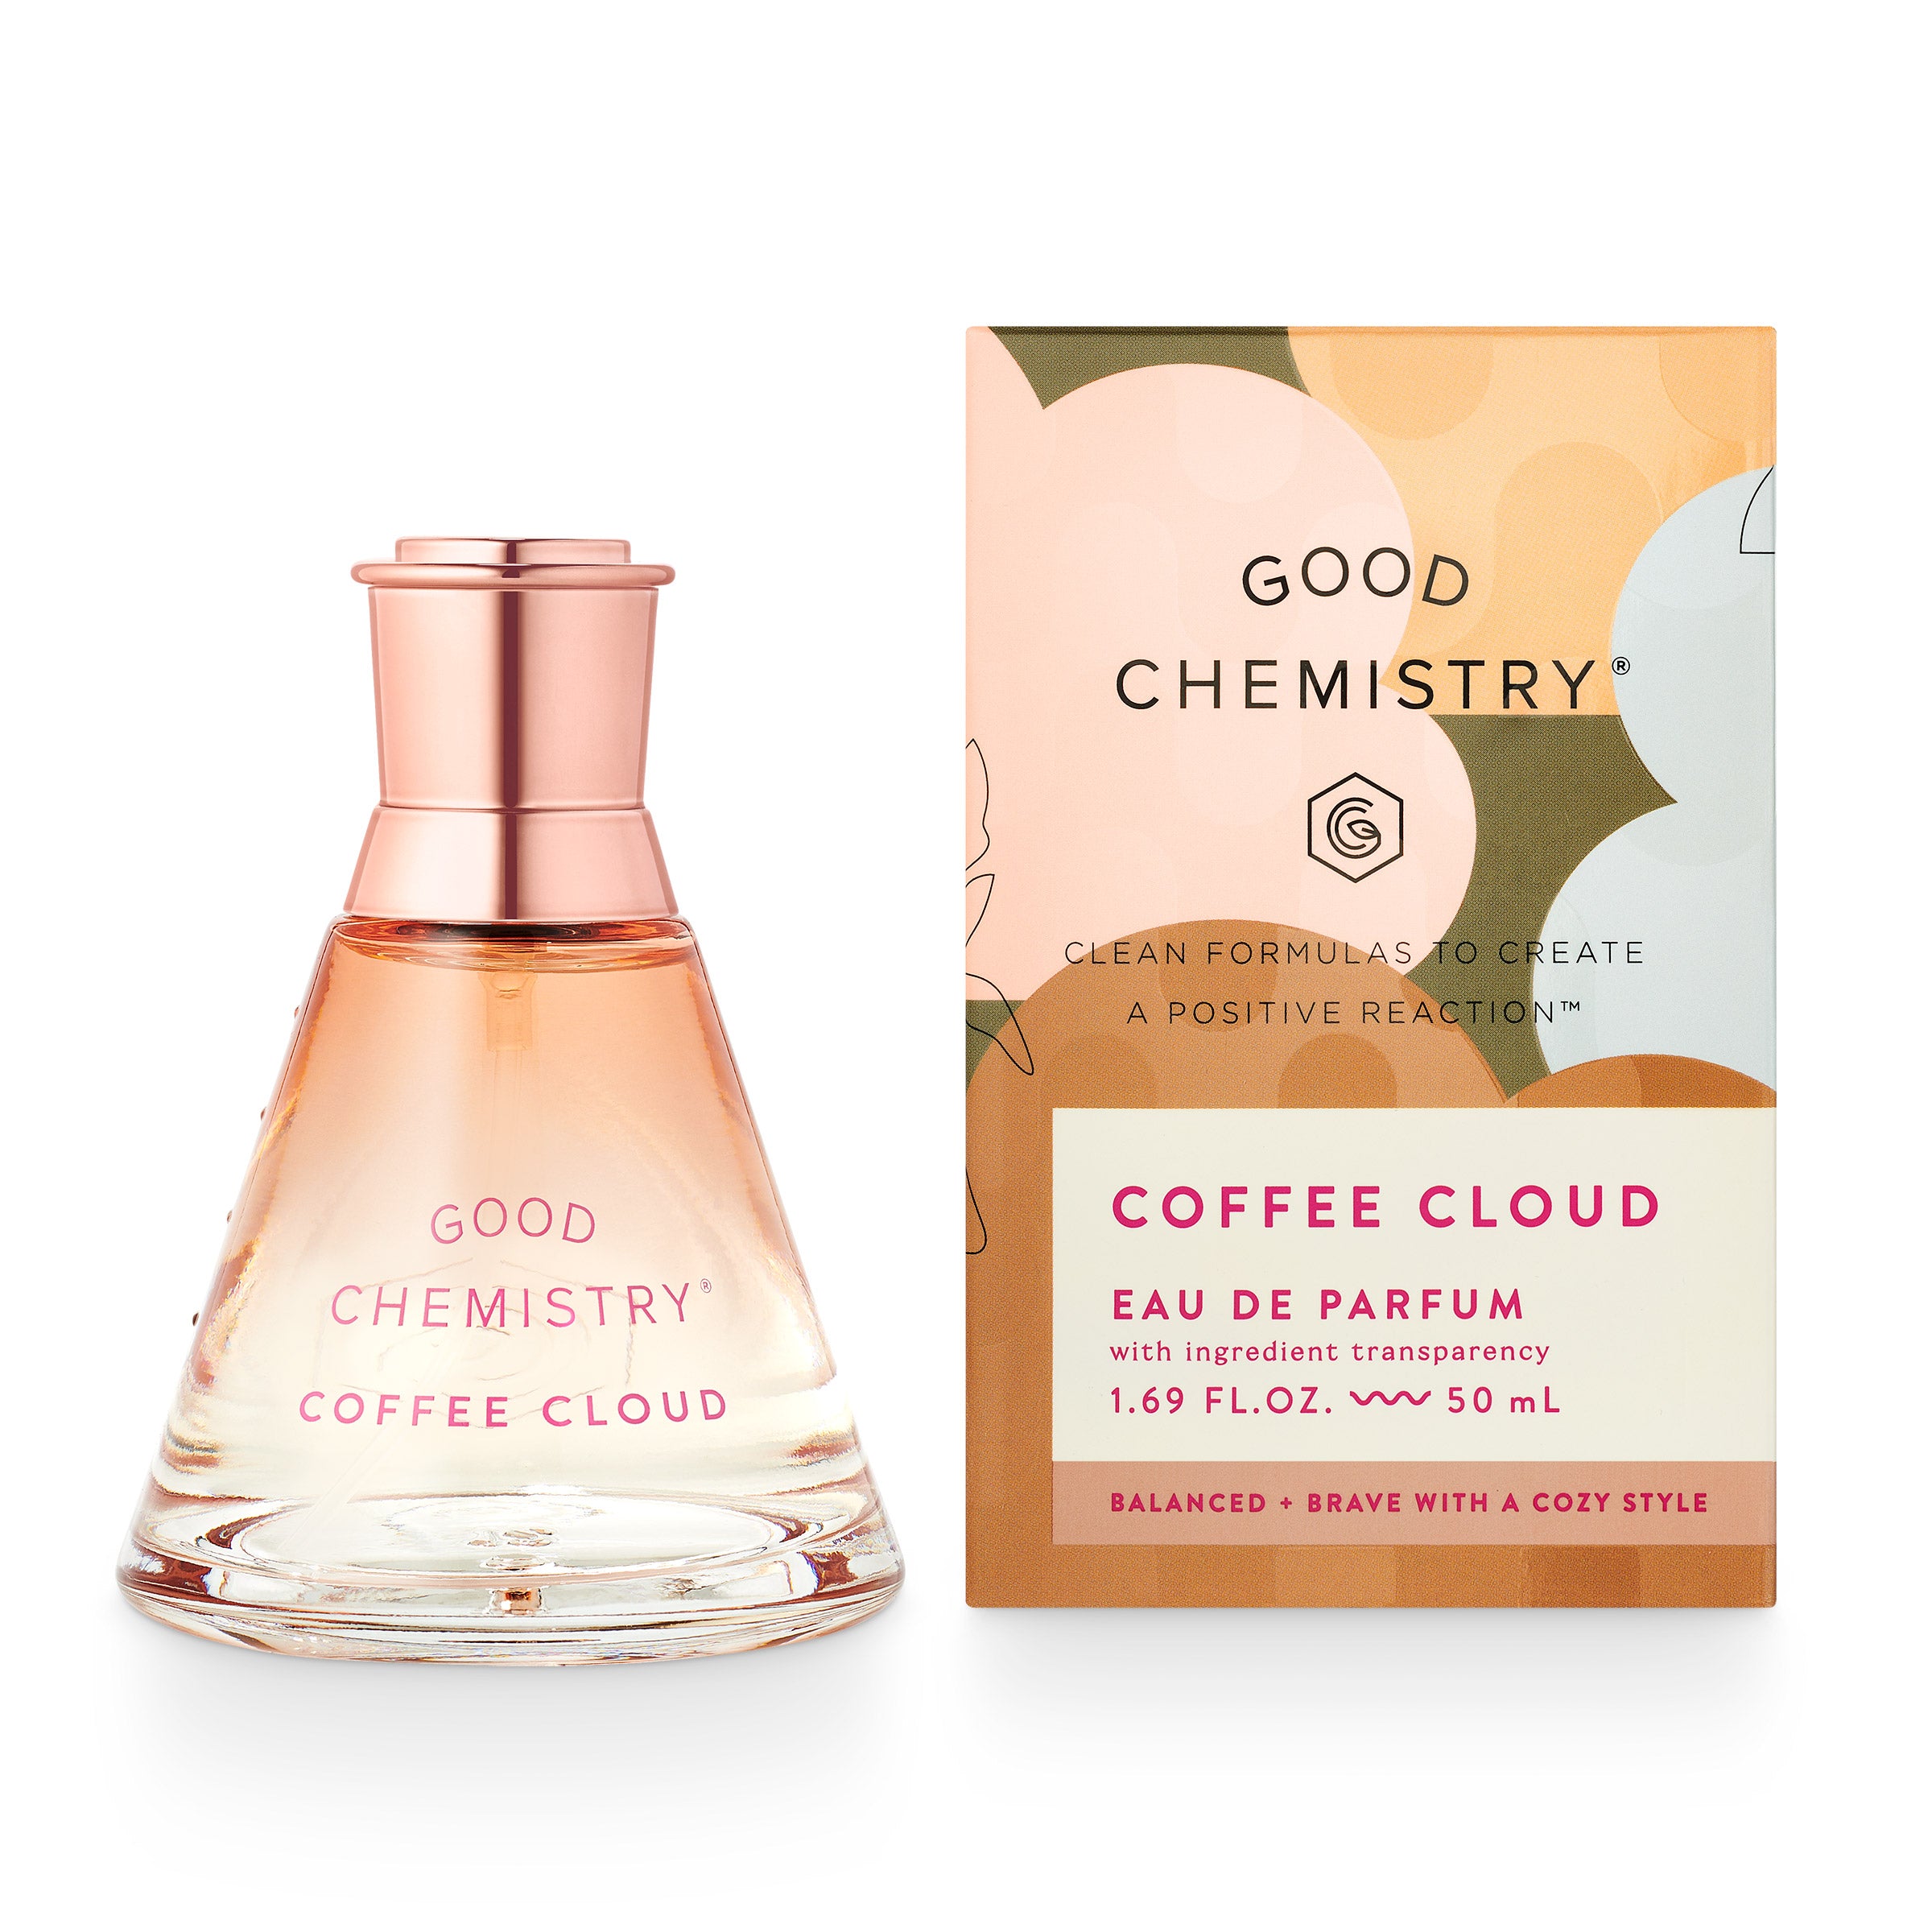 Coffee Cloud Eau de Parfum